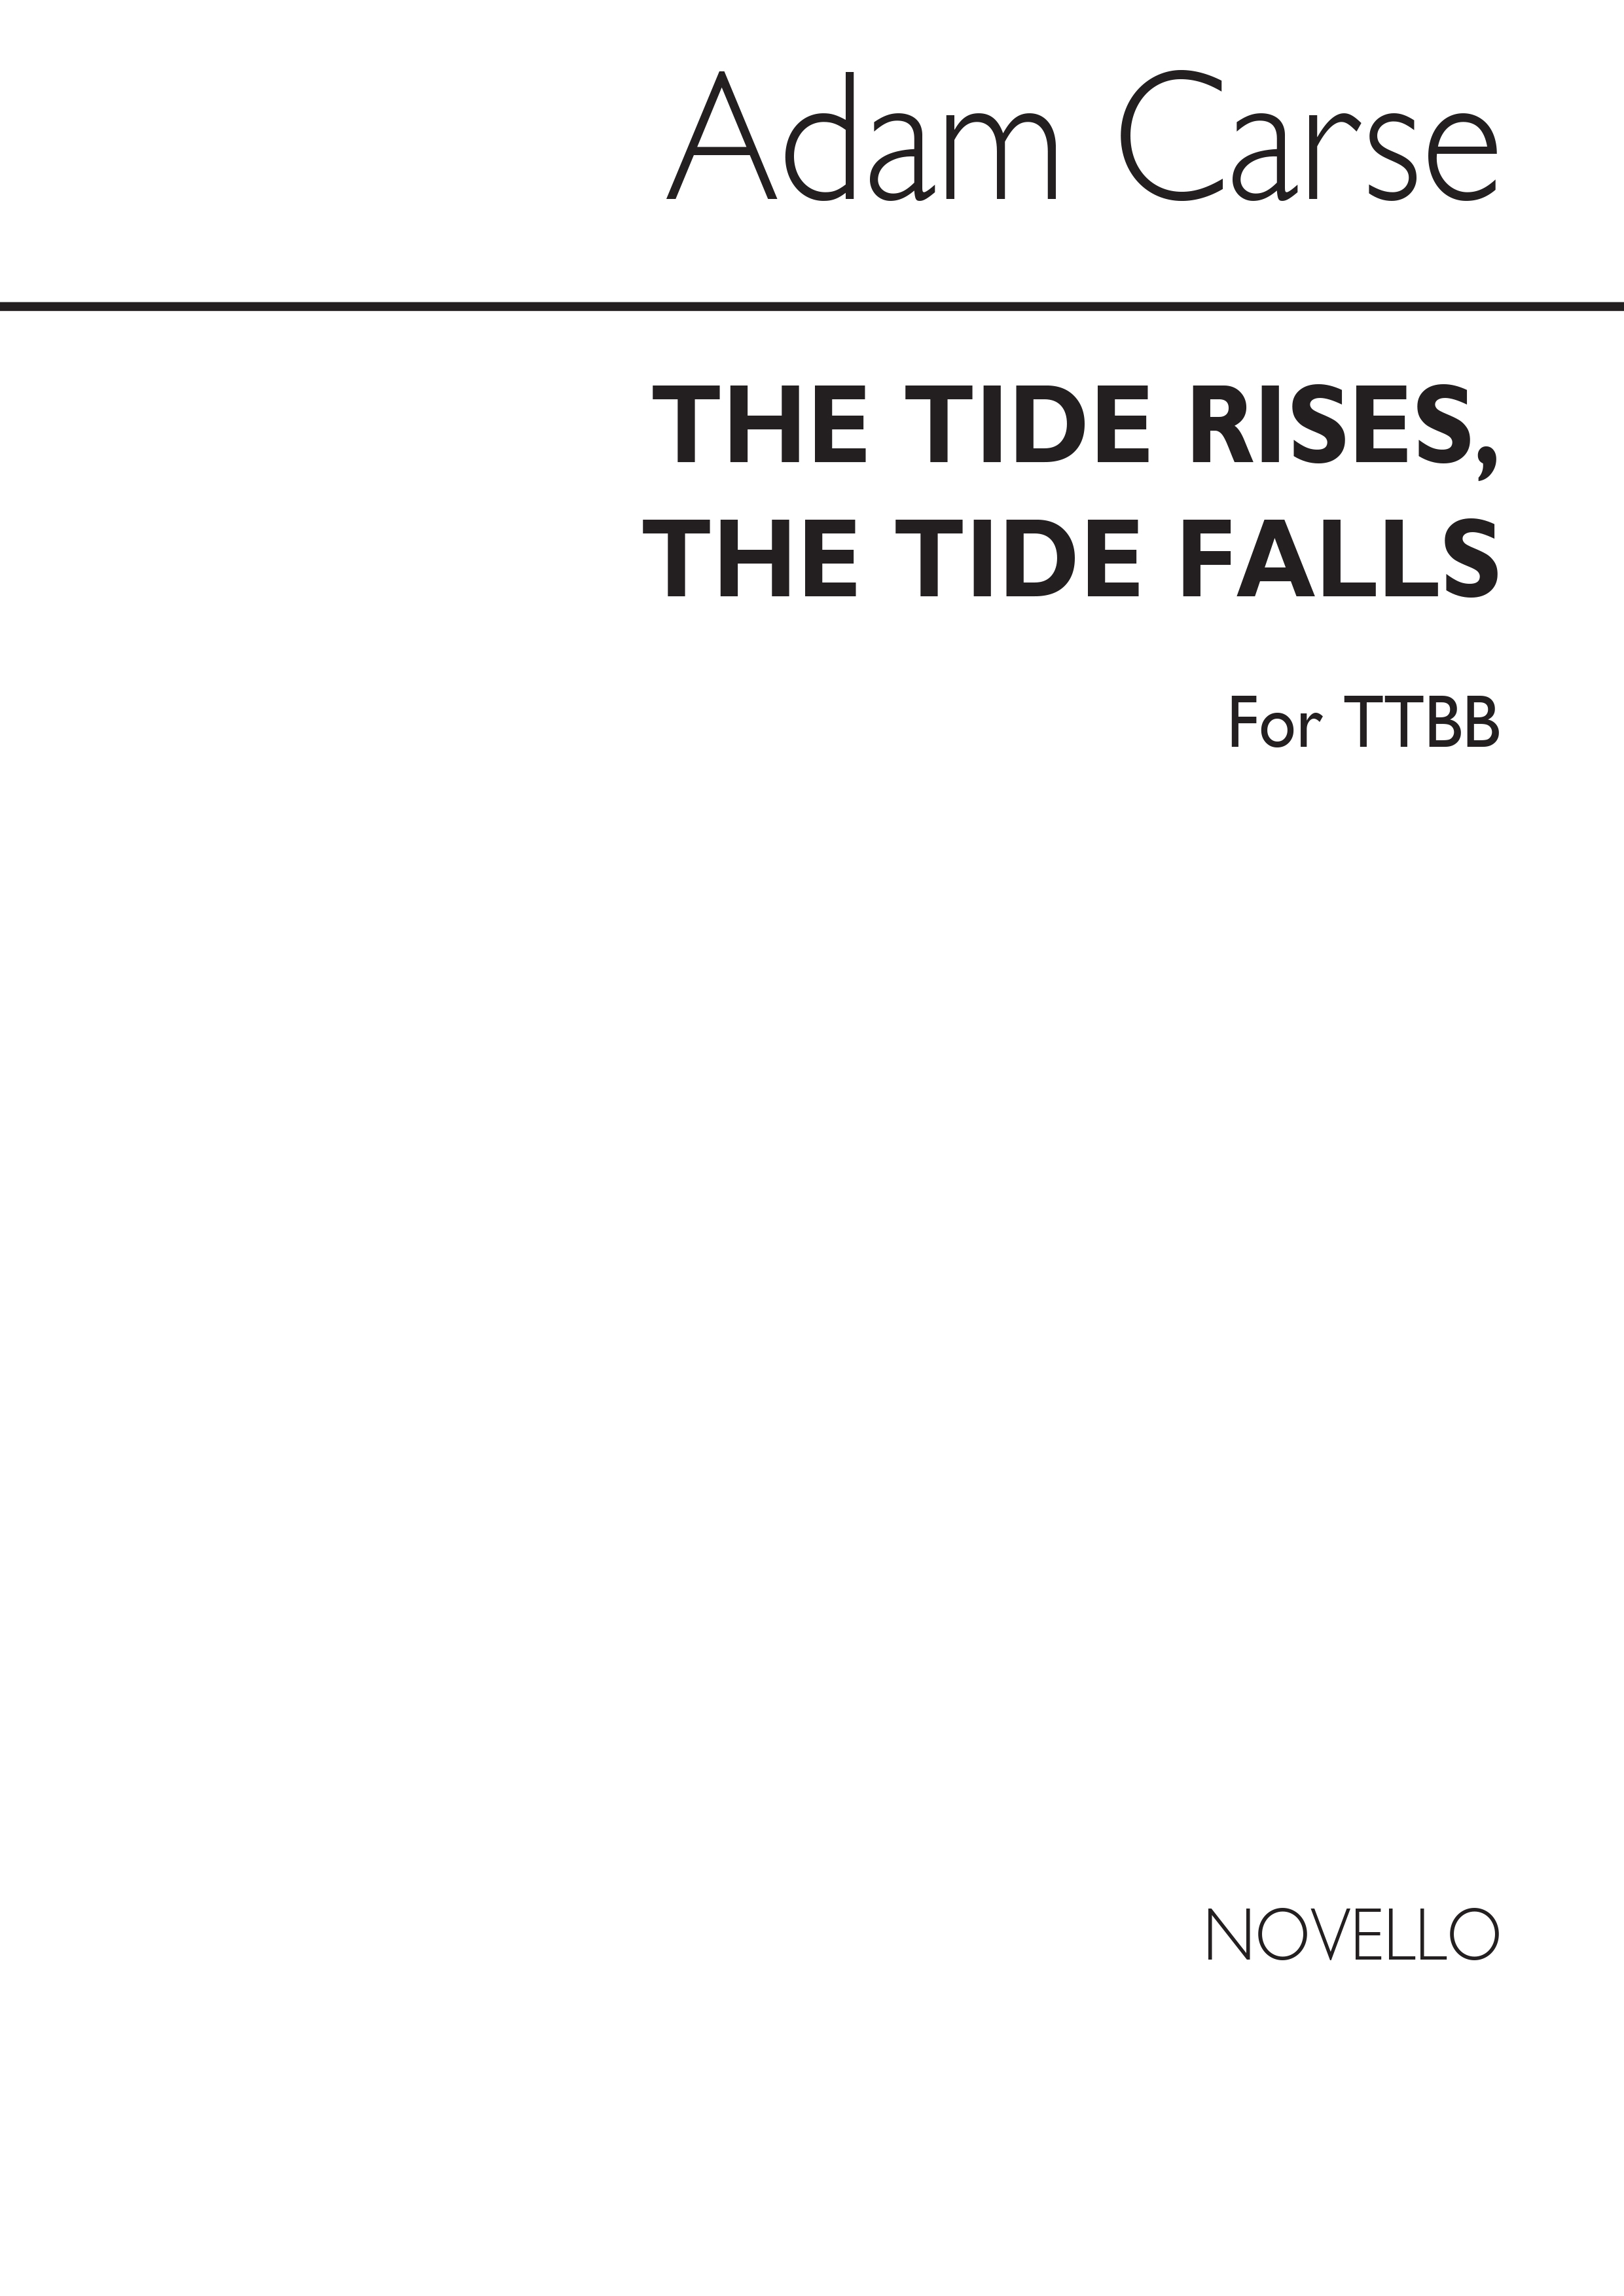 Carse Tide Rises Tide Falls Ttbb (Orpheus 577)